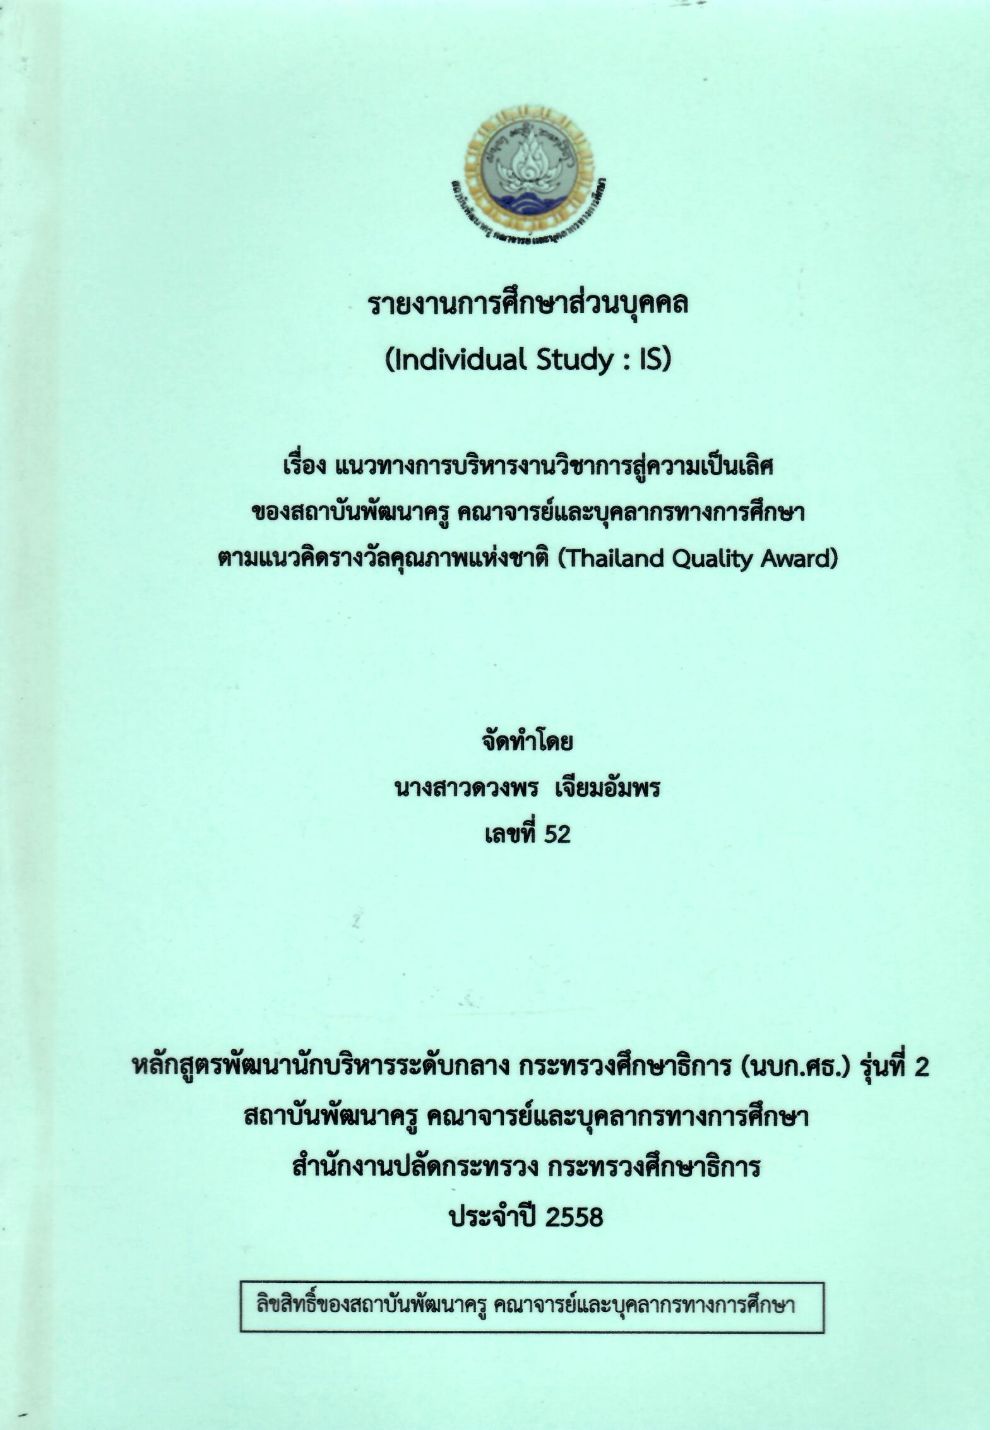 แนวทางการบริหารงานวิชาการสู่ความเป็นเลิศของสถาบันพัฒนาครู คณาจารย์และบุคลากรทางการศึกษา ตามแนวคิดรางวัลคุณภาพแห่งชาติ (Thailand Quality Award) : รายงานการศึกษาส่วนบุคคล (Individual Study)/ ดวงพร เจียมอัมพร